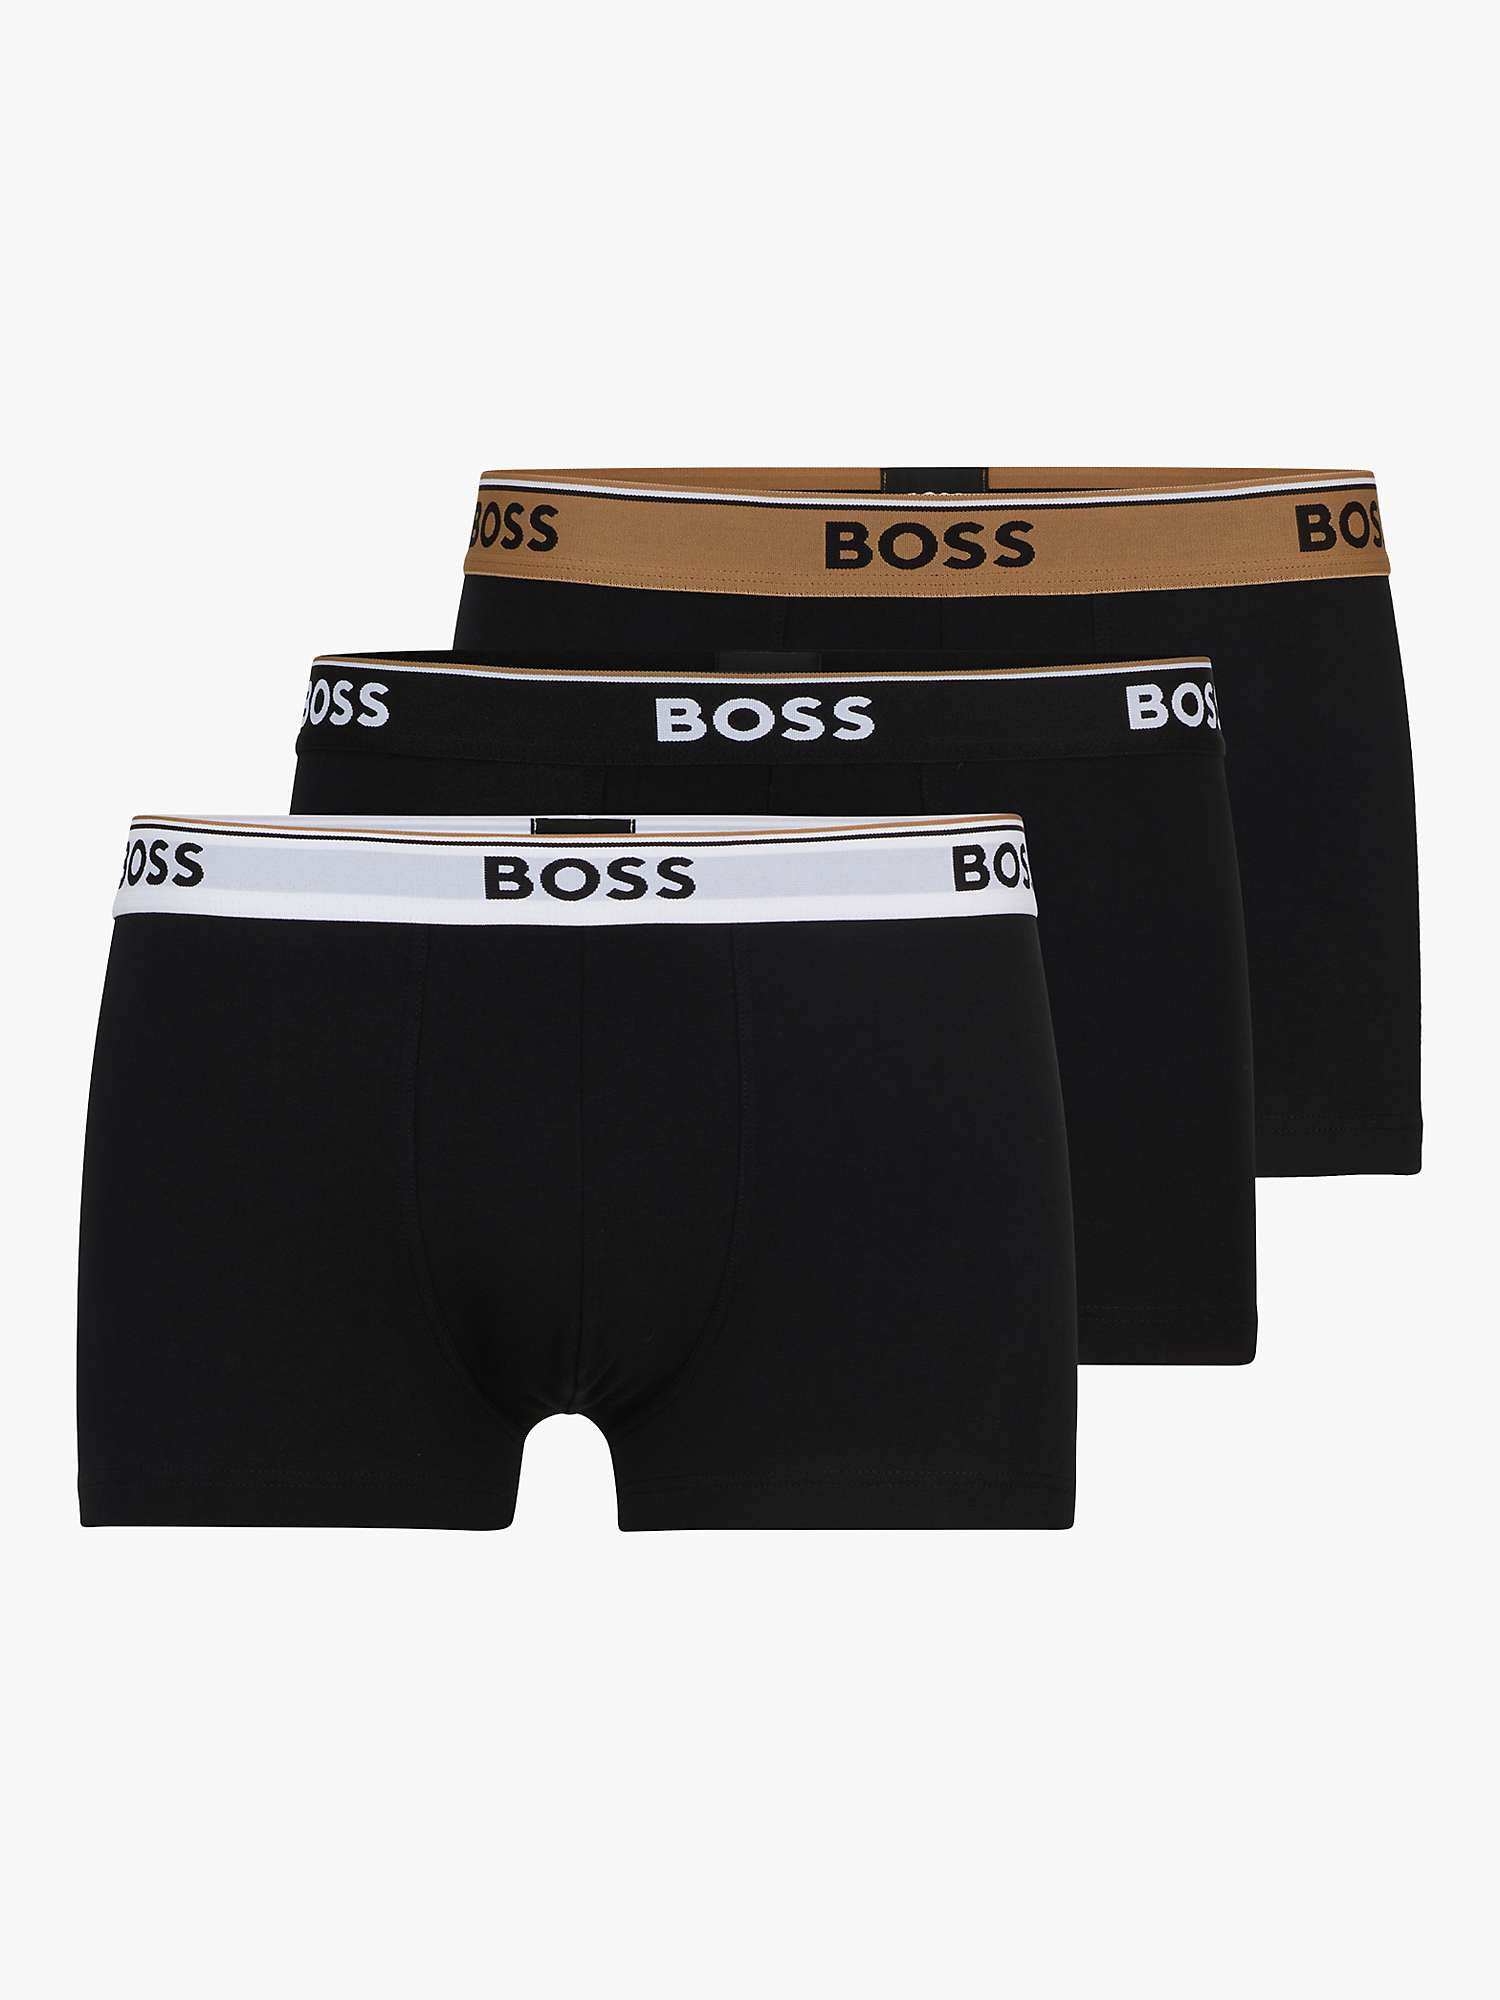 Buy BOSS Jacquard Logo Waistband Trunks, Pack of 3, Black Online at johnlewis.com